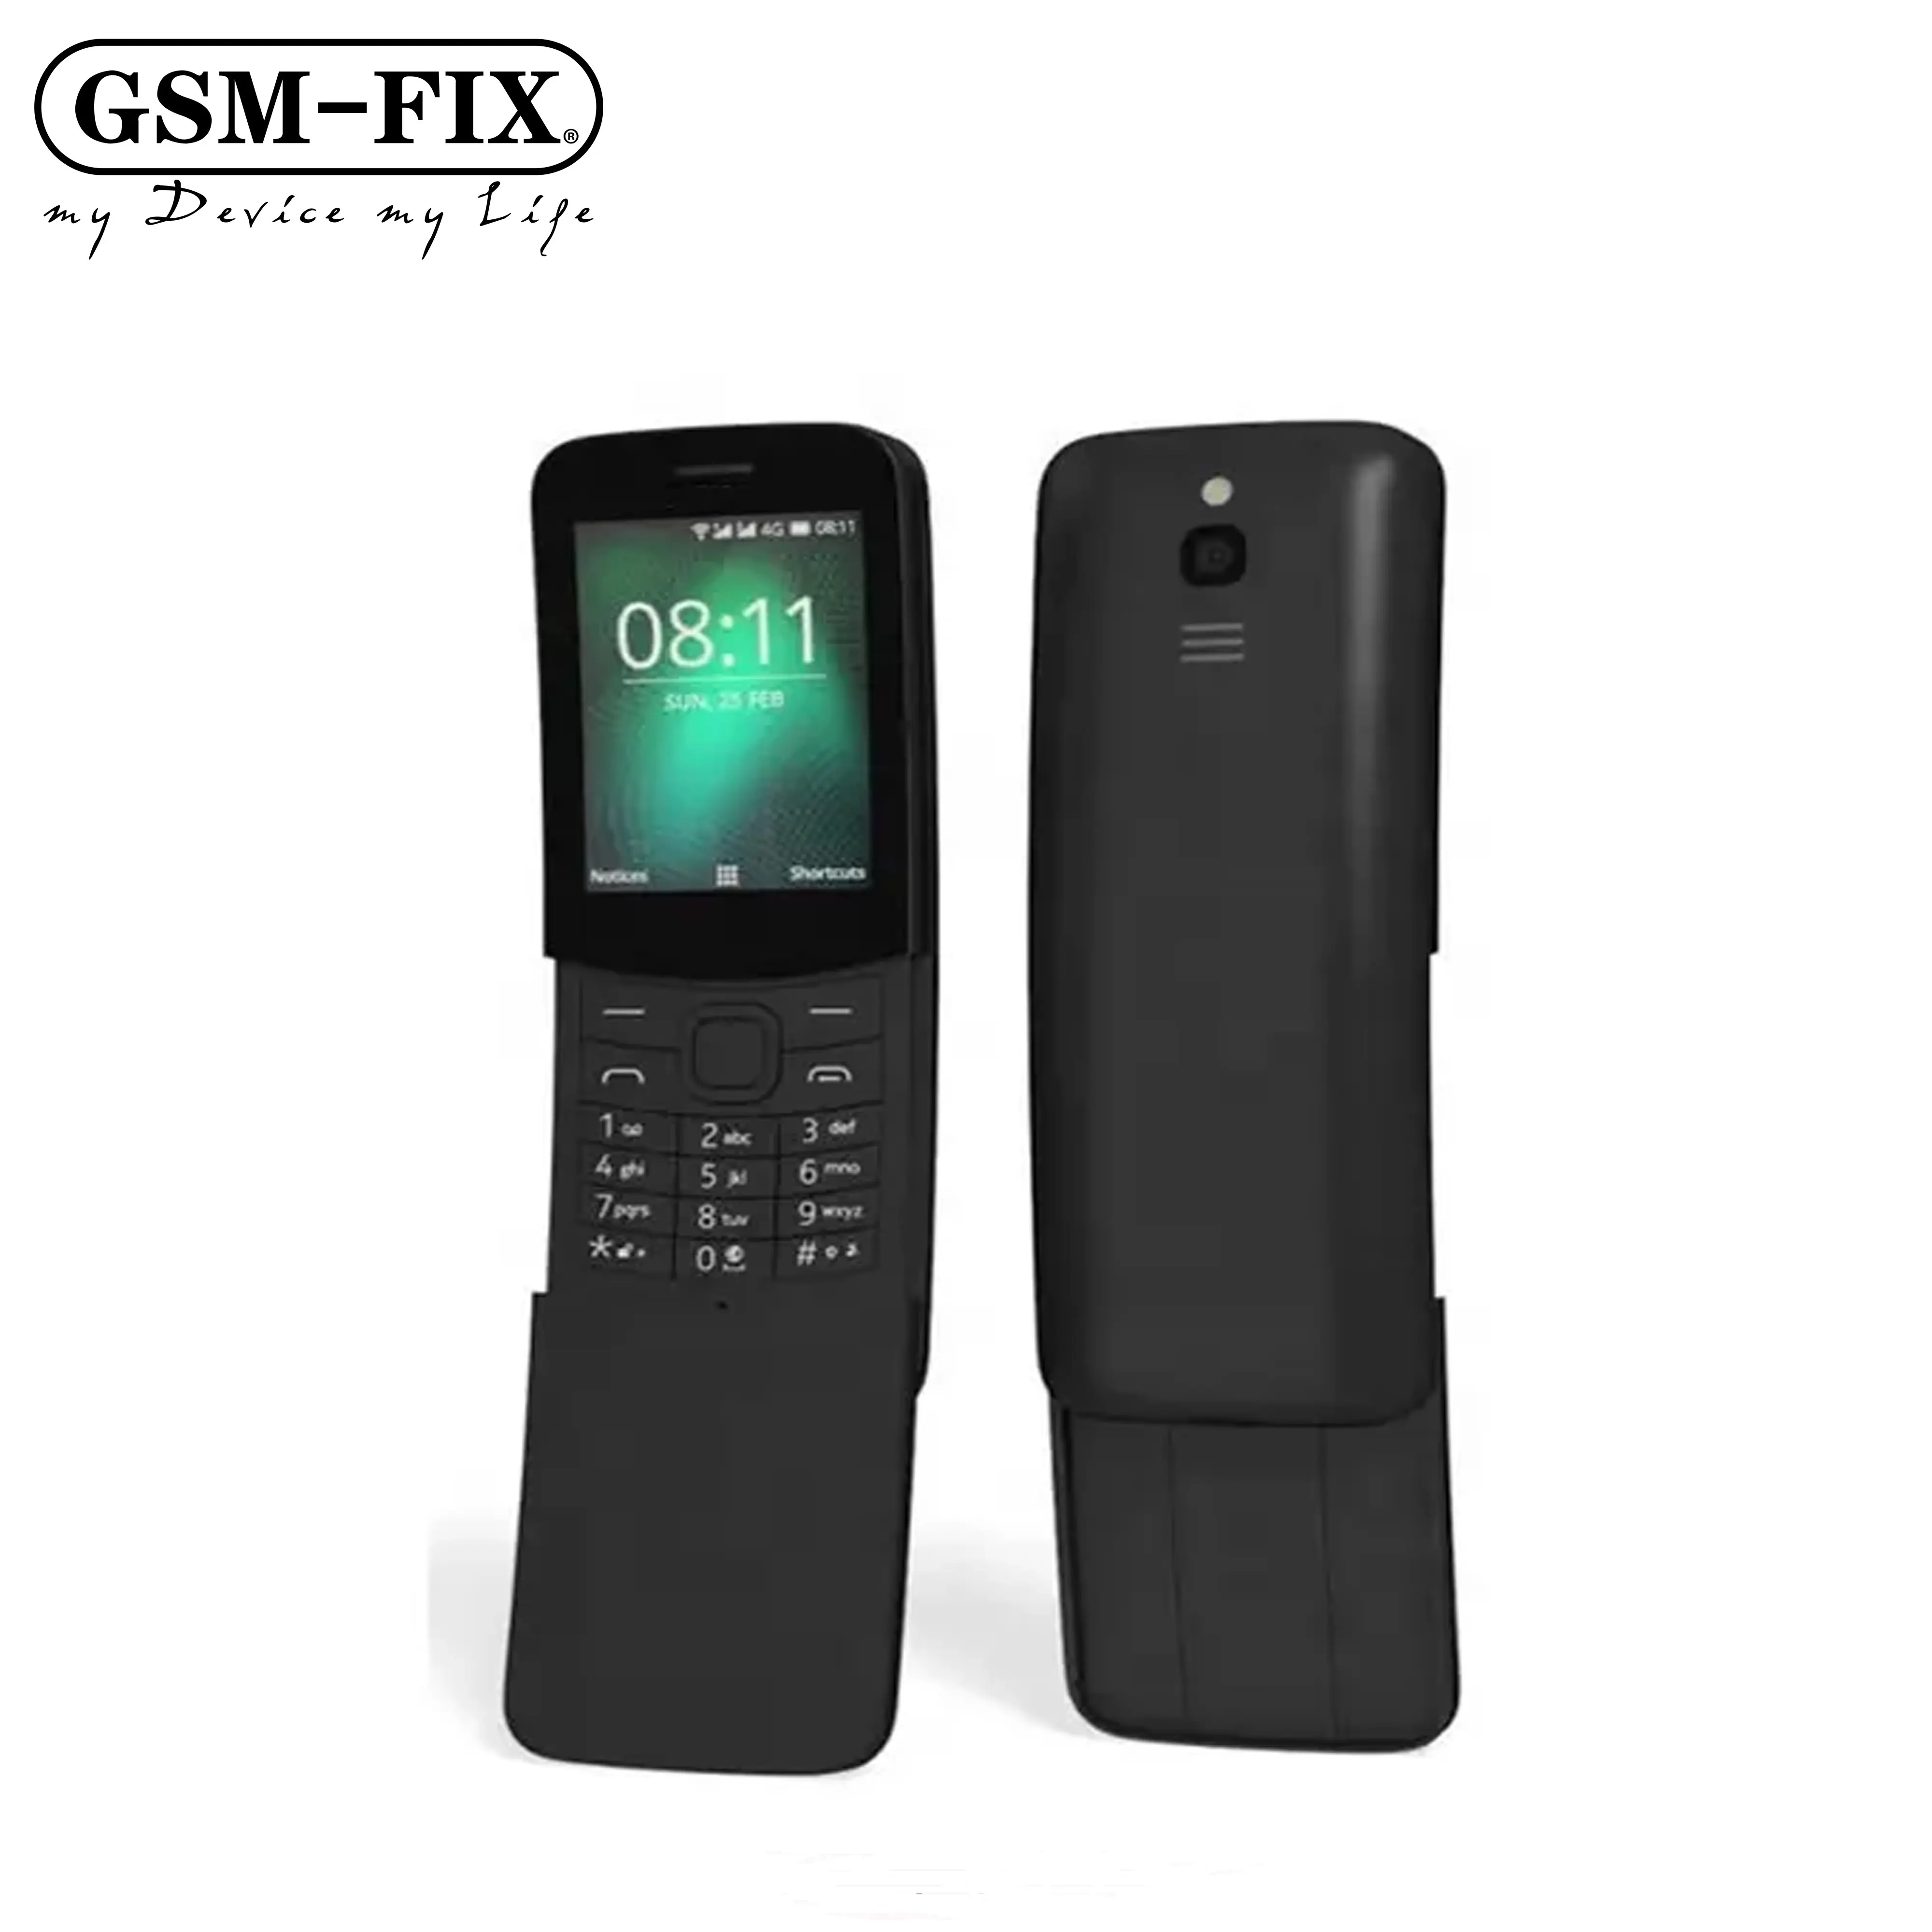 GSM-FIX pour Nokia 8110 4G meilleur achat usine d'origine débloqué Super pas cher classique curseur téléphone portable